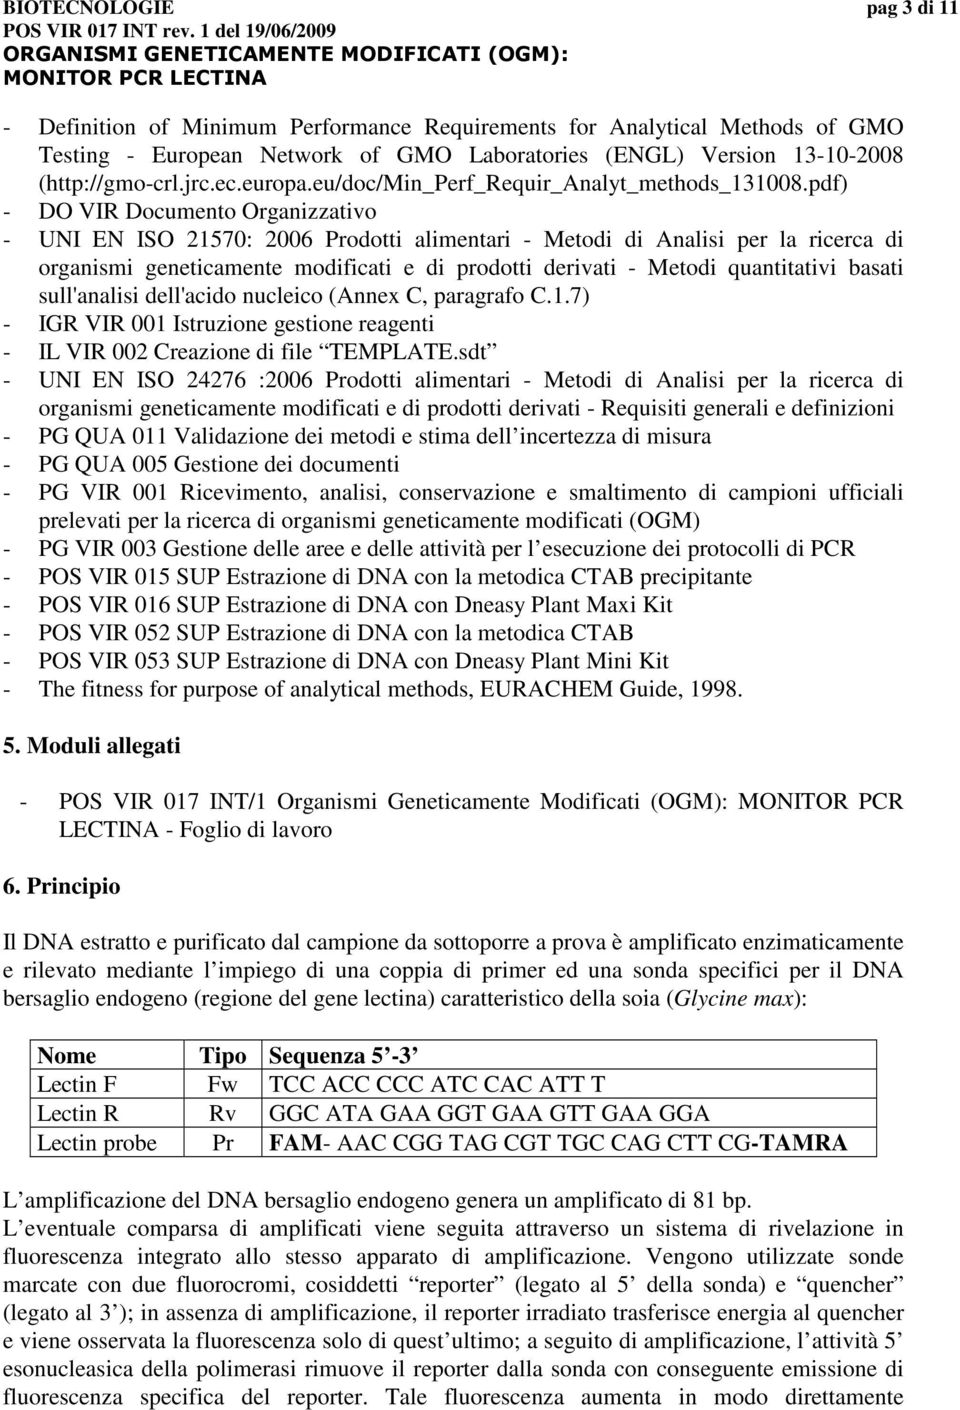 pdf) - DO VIR Documento Organizzativo - UNI EN ISO 21570: 2006 Prodotti alimentari - Metodi di Analisi per la ricerca di organismi geneticamente modificati e di prodotti derivati - Metodi